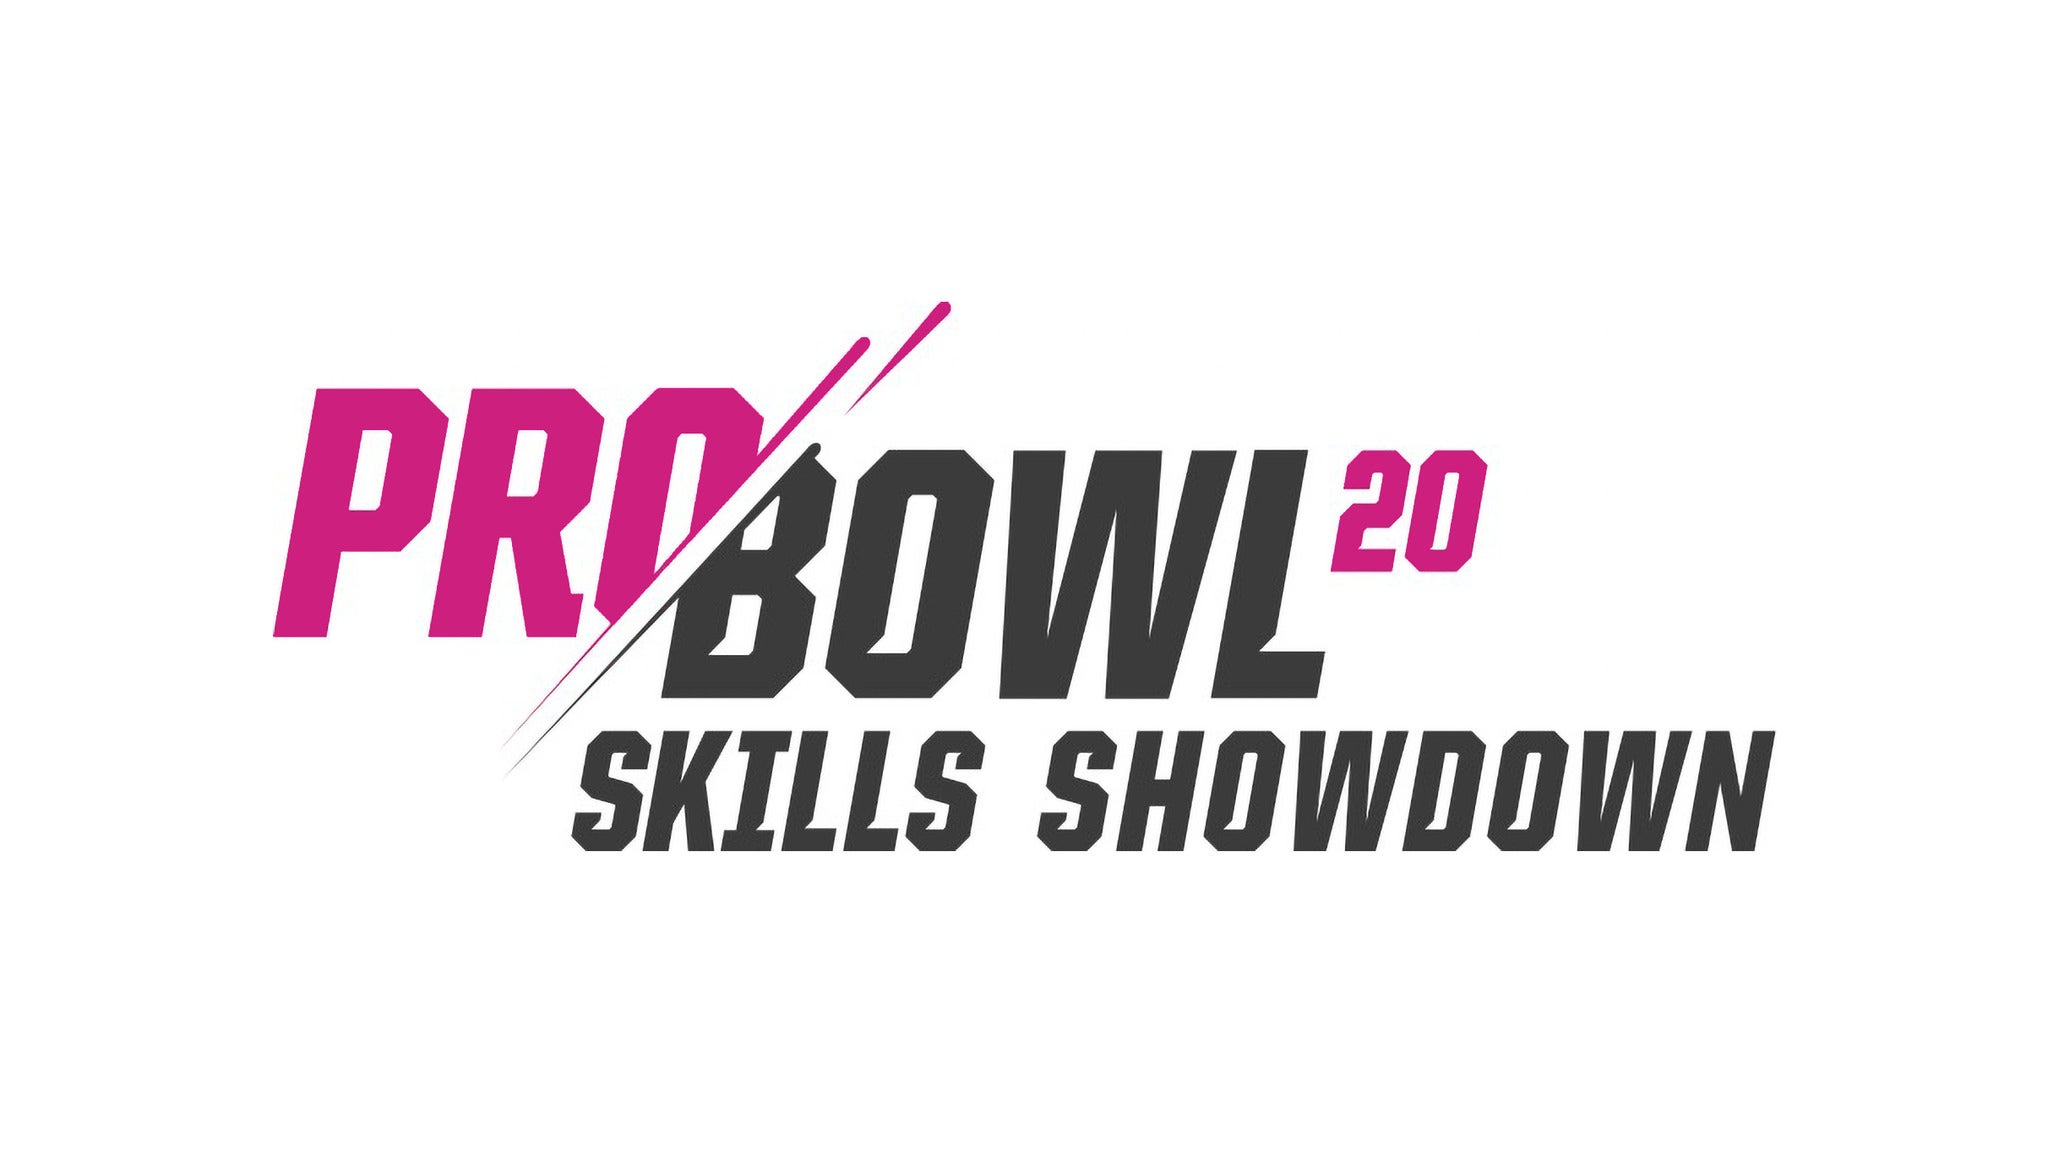 2020 Pro Bowl Skills Showdown Tickets Single Game Tickets & Schedule